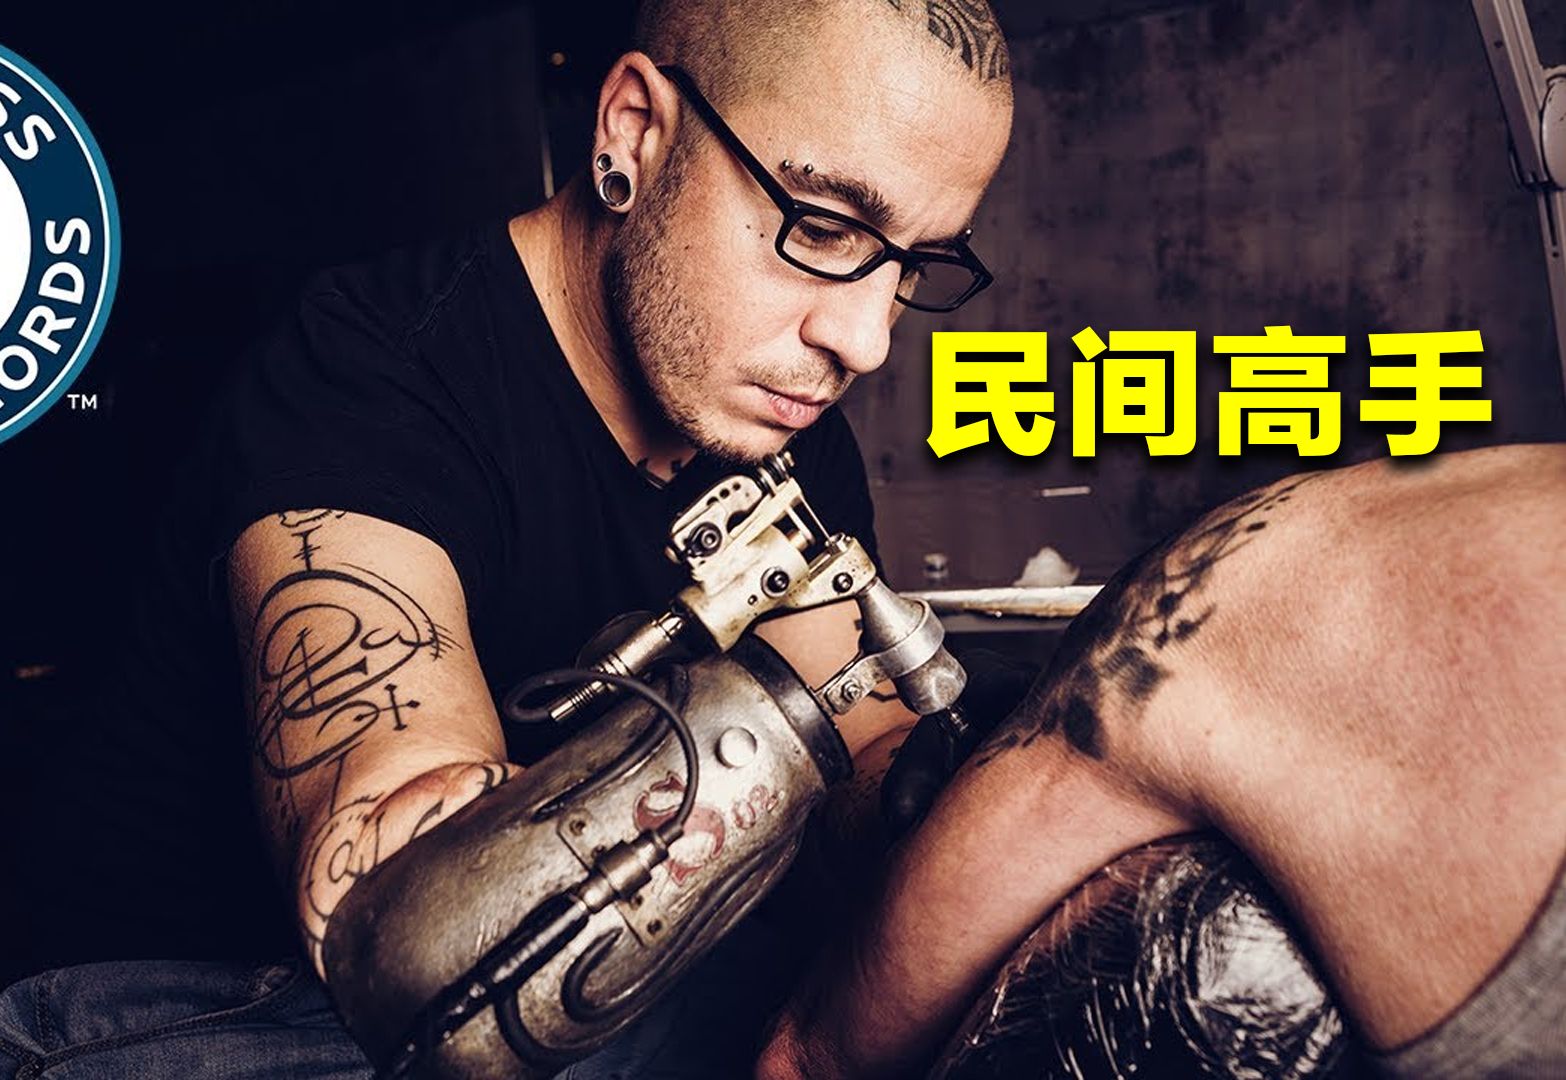 最强断臂纹身师，用假肢给顾客纹身，创下世界纪录